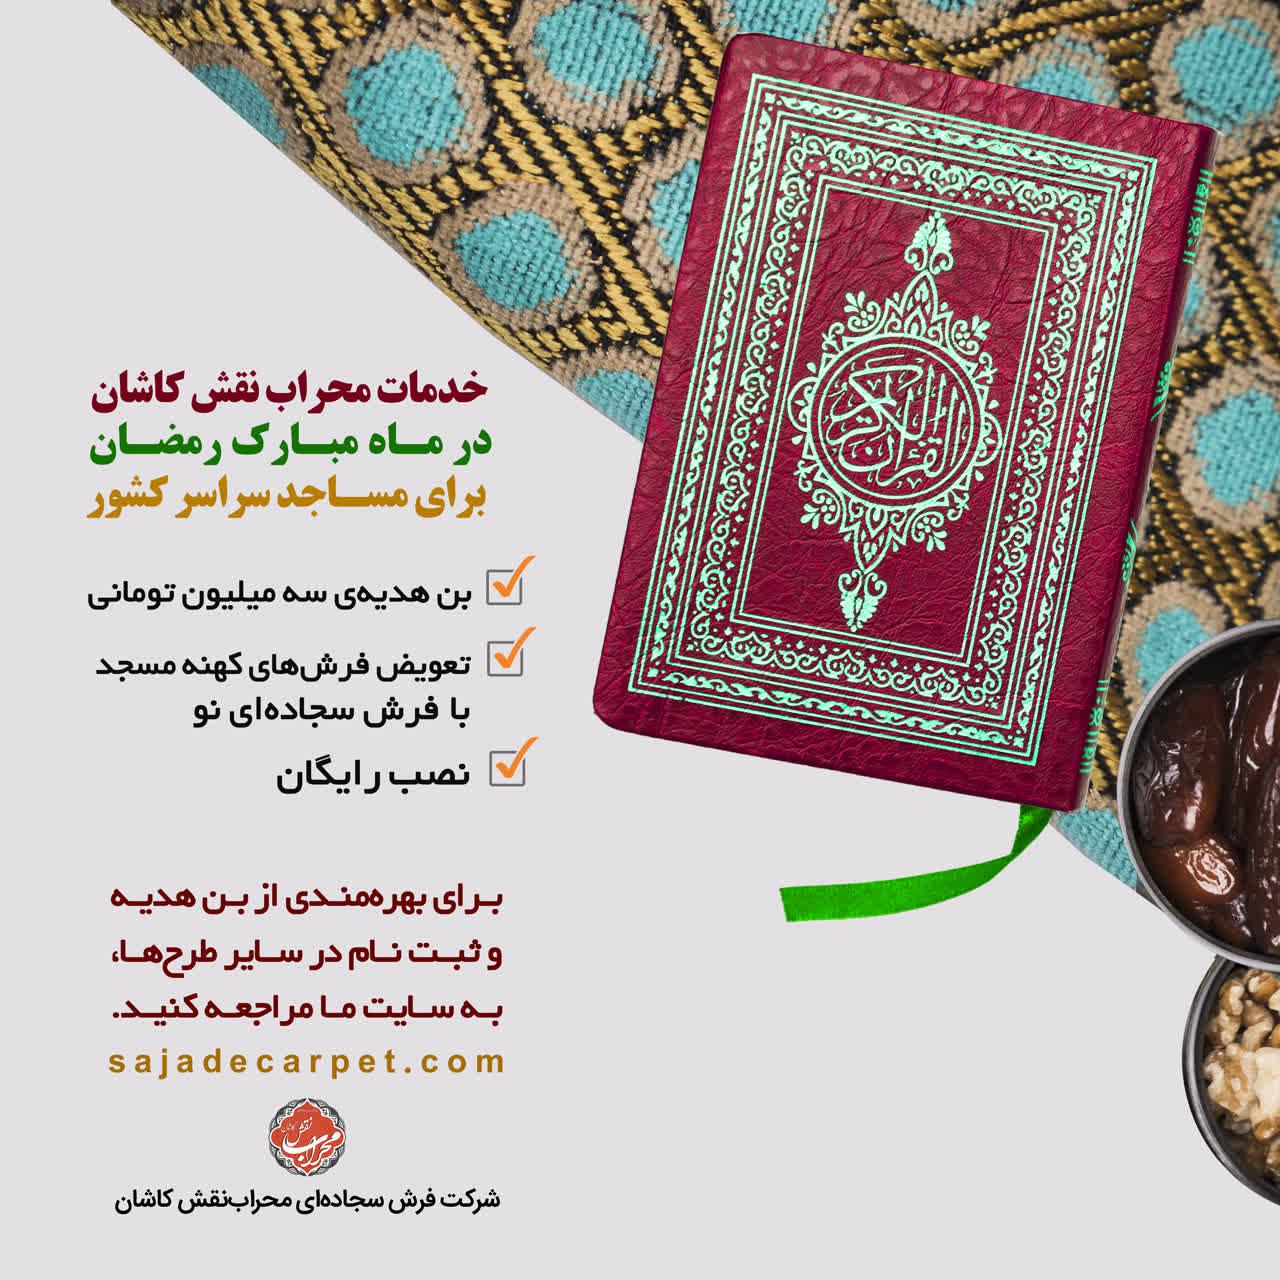 طرح های ویژه فروش فرش سجاده ای مسجد ، فروش فرش مسجد درماه رمضان